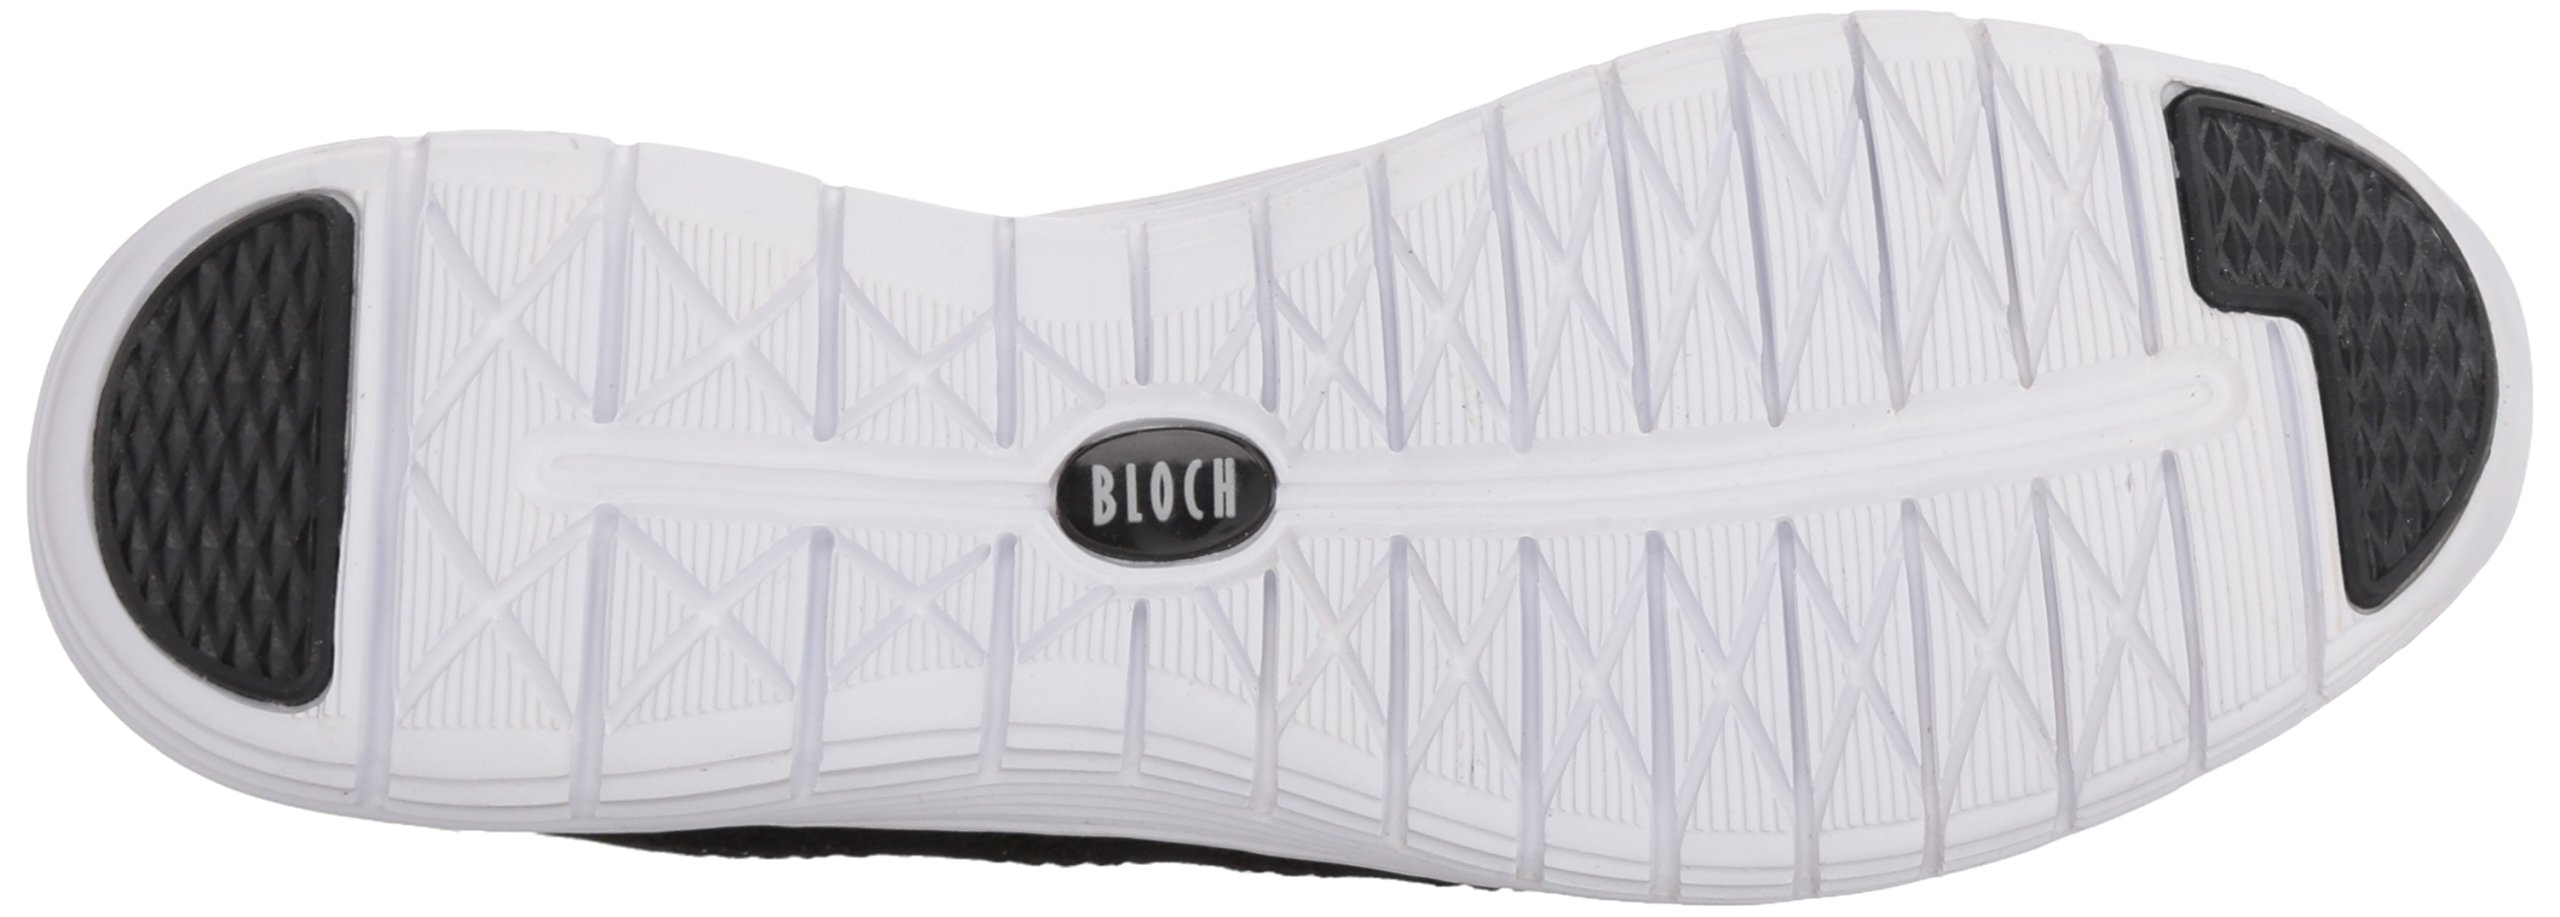 Bloch Women's Omnia Shoe